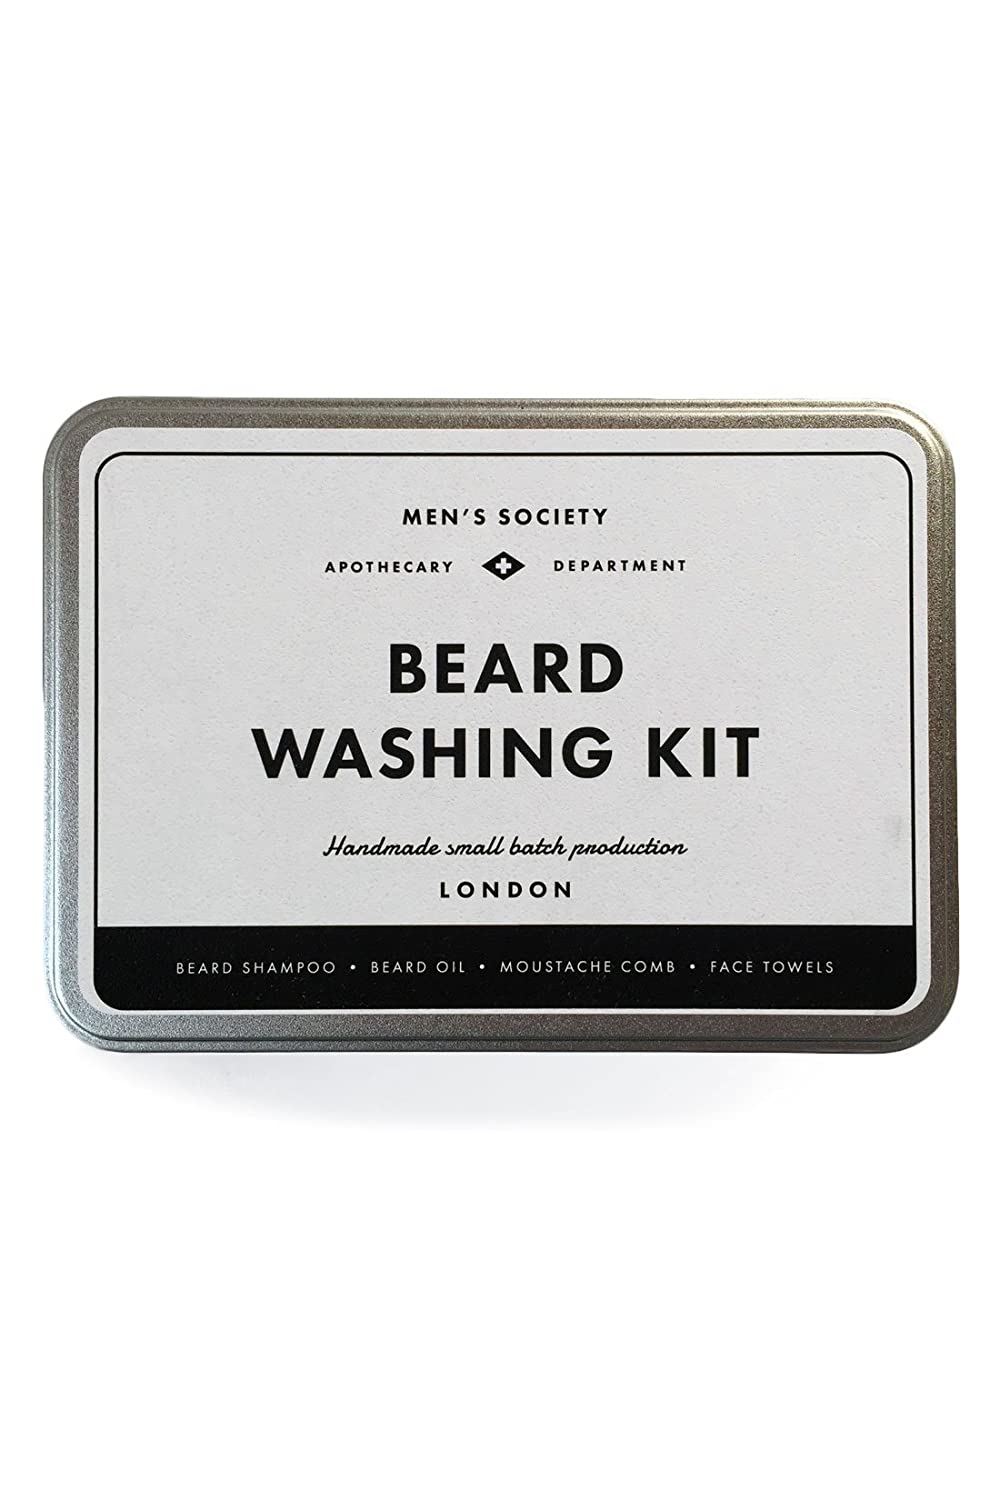 MEN'S SOCIETY Beard Washing Kit